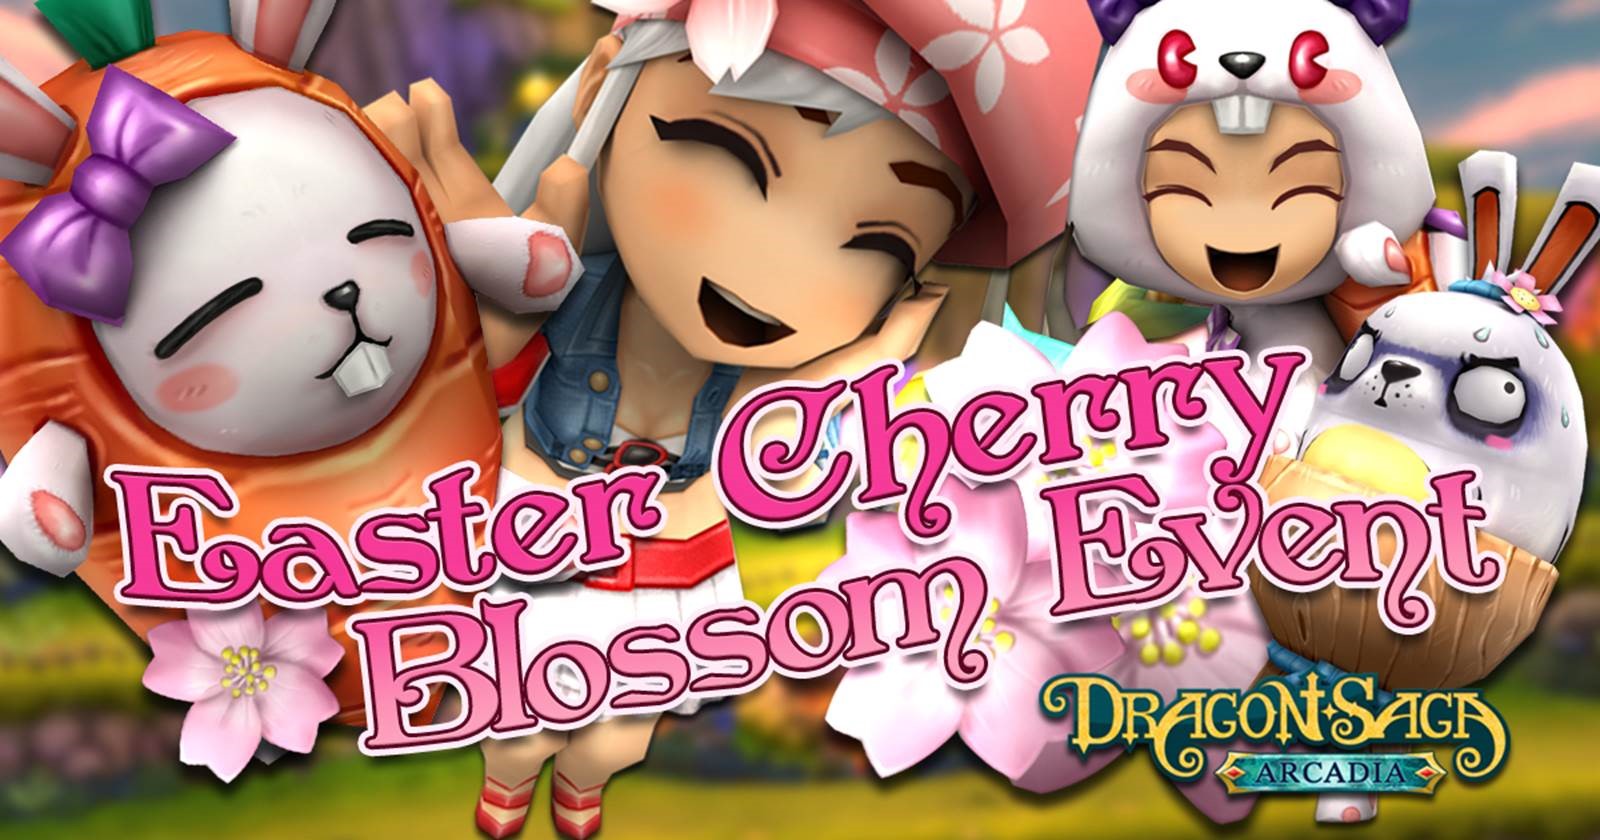 Easter-Cherry-Blossom-FB.jpg